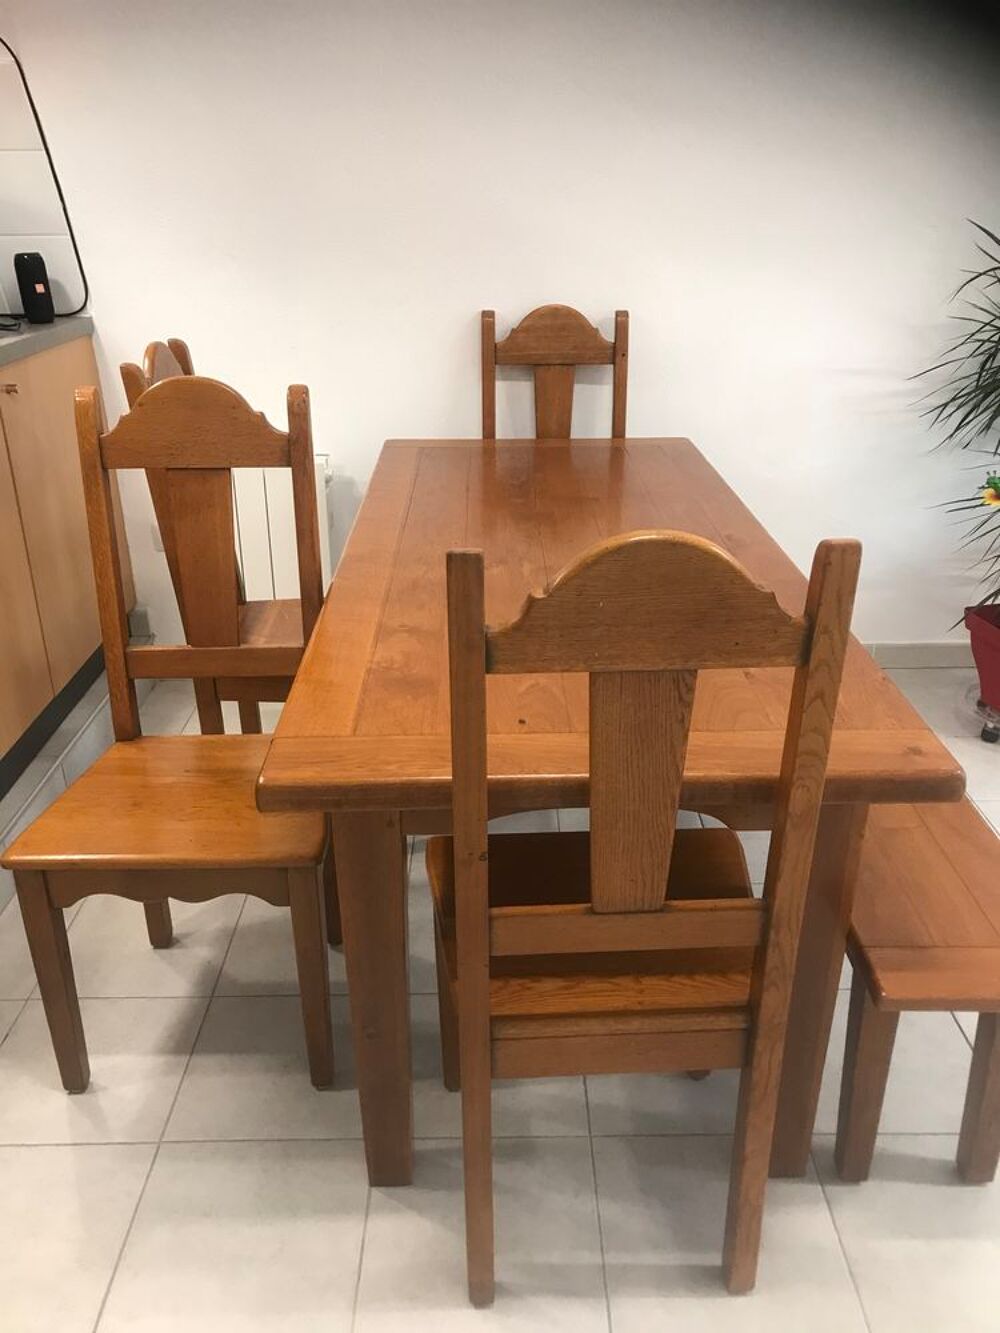 Table en ch&ecirc;ne + 4 chaises + banc 3 places + 2 rallonges.
Meubles